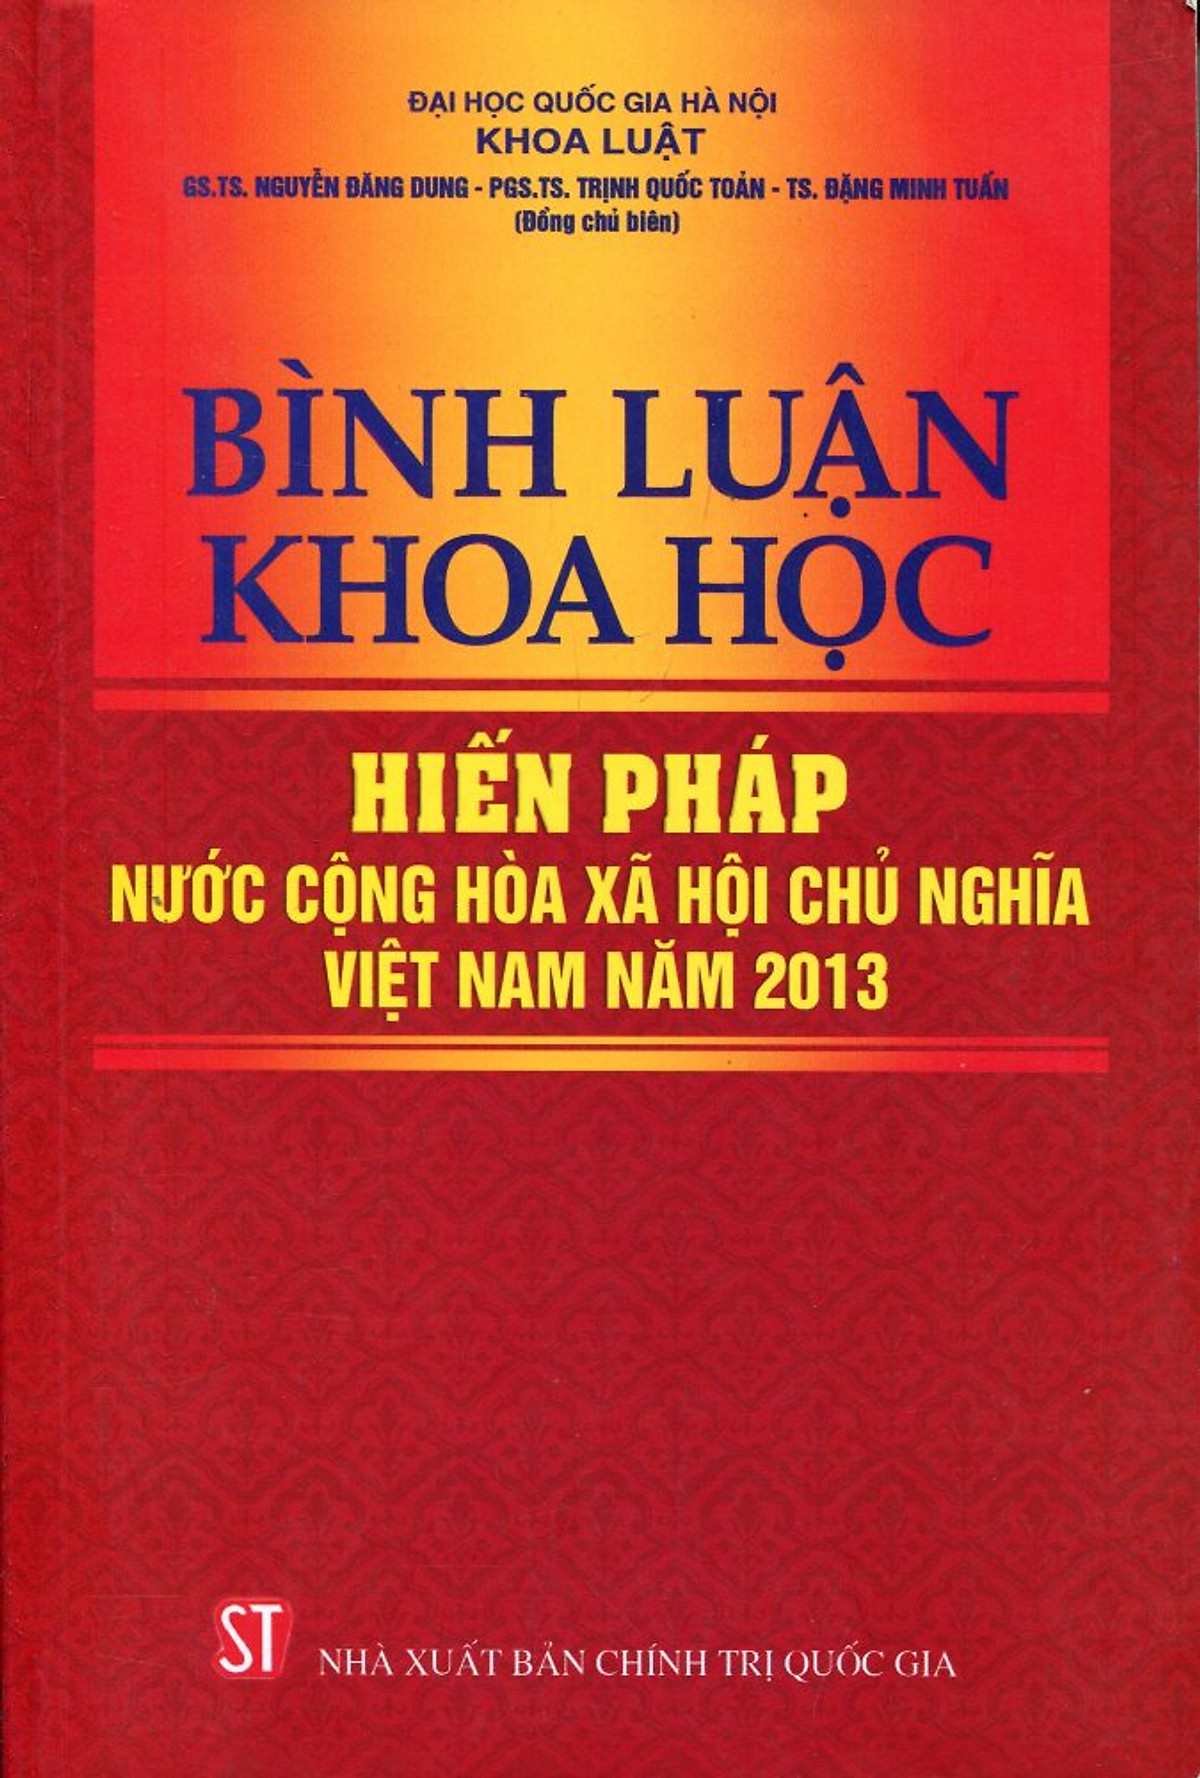 Hiến pháp nước Cộng hòa xã hội chủ nghĩa Việt Nam năm 2013 có bao nhiêu chương bao nhiêu điều?